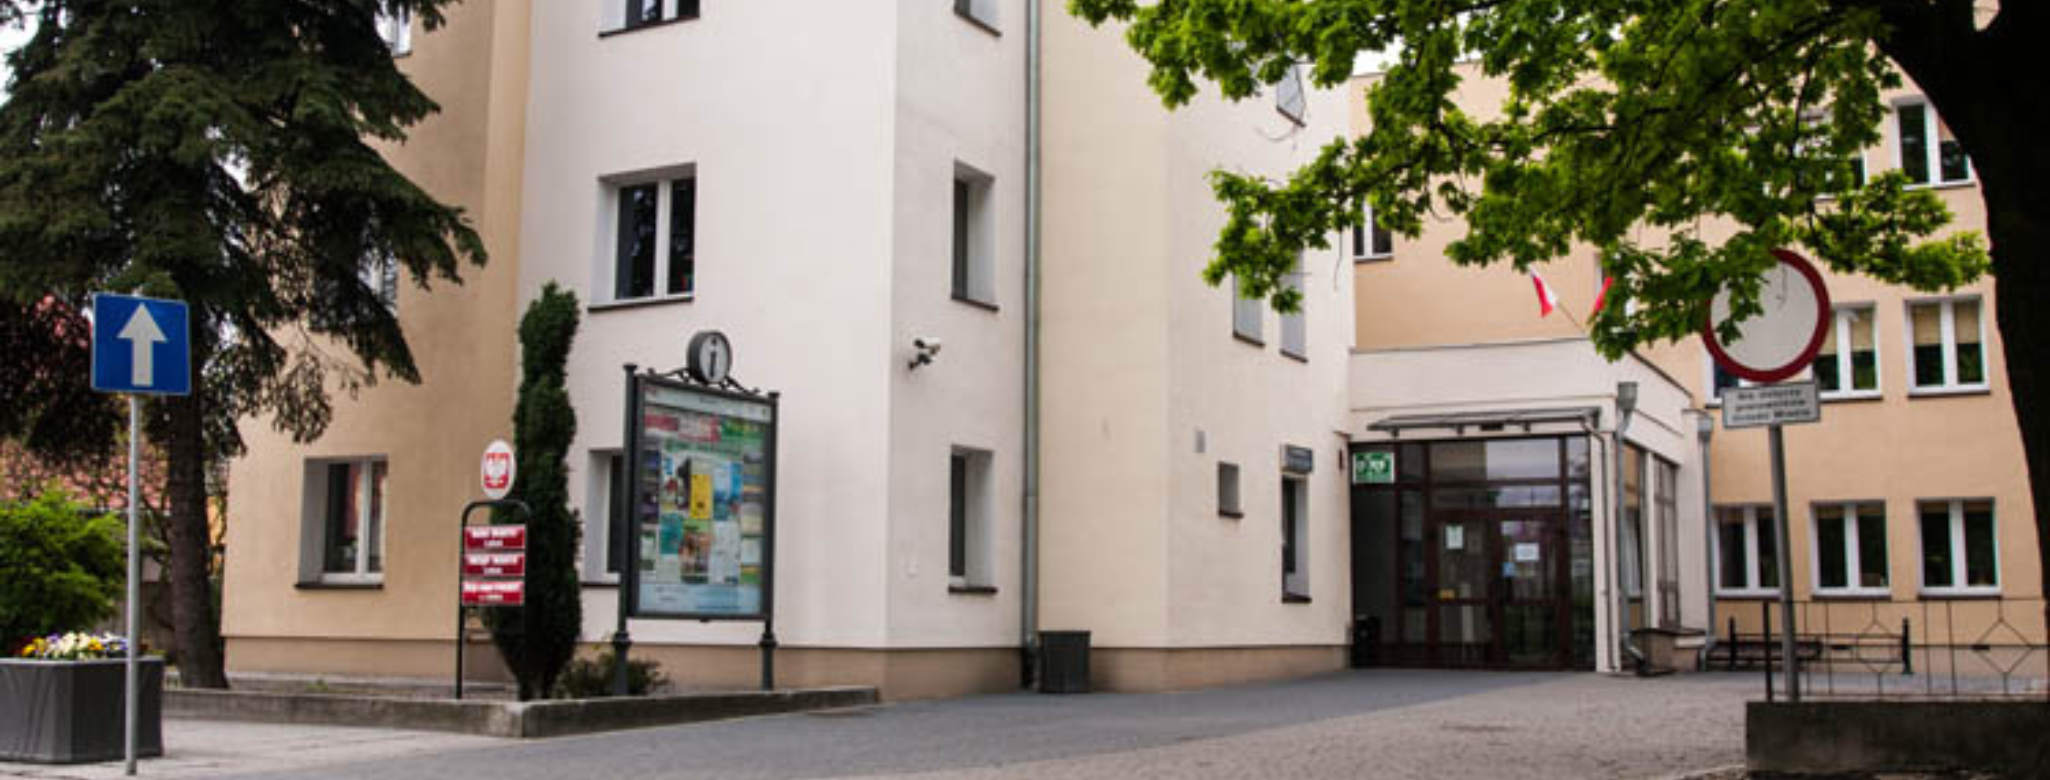 Wygląd budynku Urzędu Miasta Luboń, znajdujący się przy pl. Edmunda Bojanowskiego 2 w Luboniu